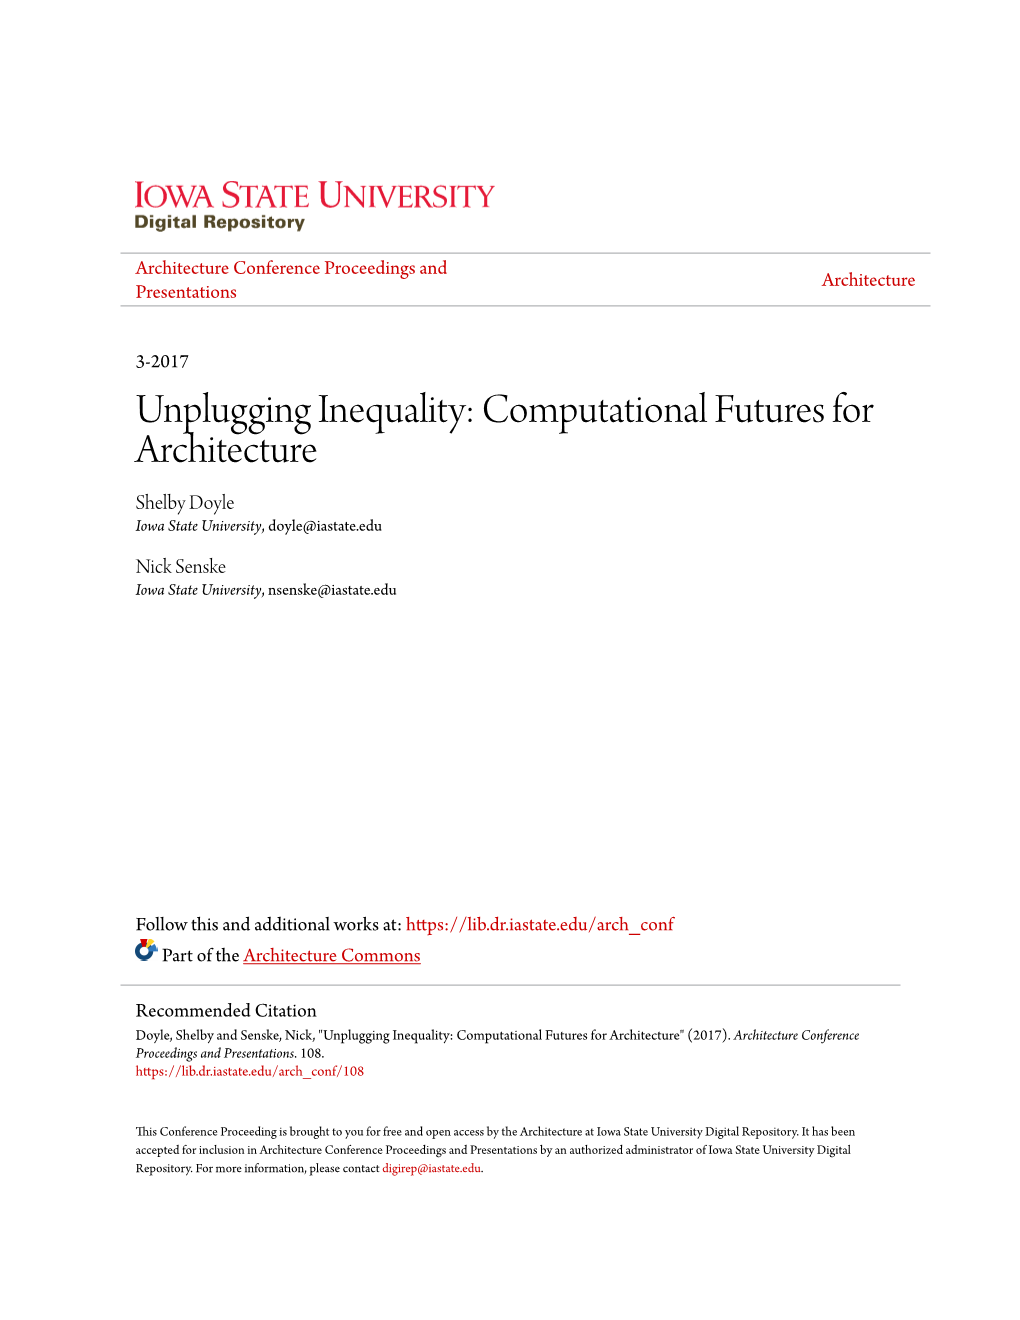 Unplugging Inequality: Computational Futures for Architecture Shelby Doyle Iowa State University, Doyle@Iastate.Edu